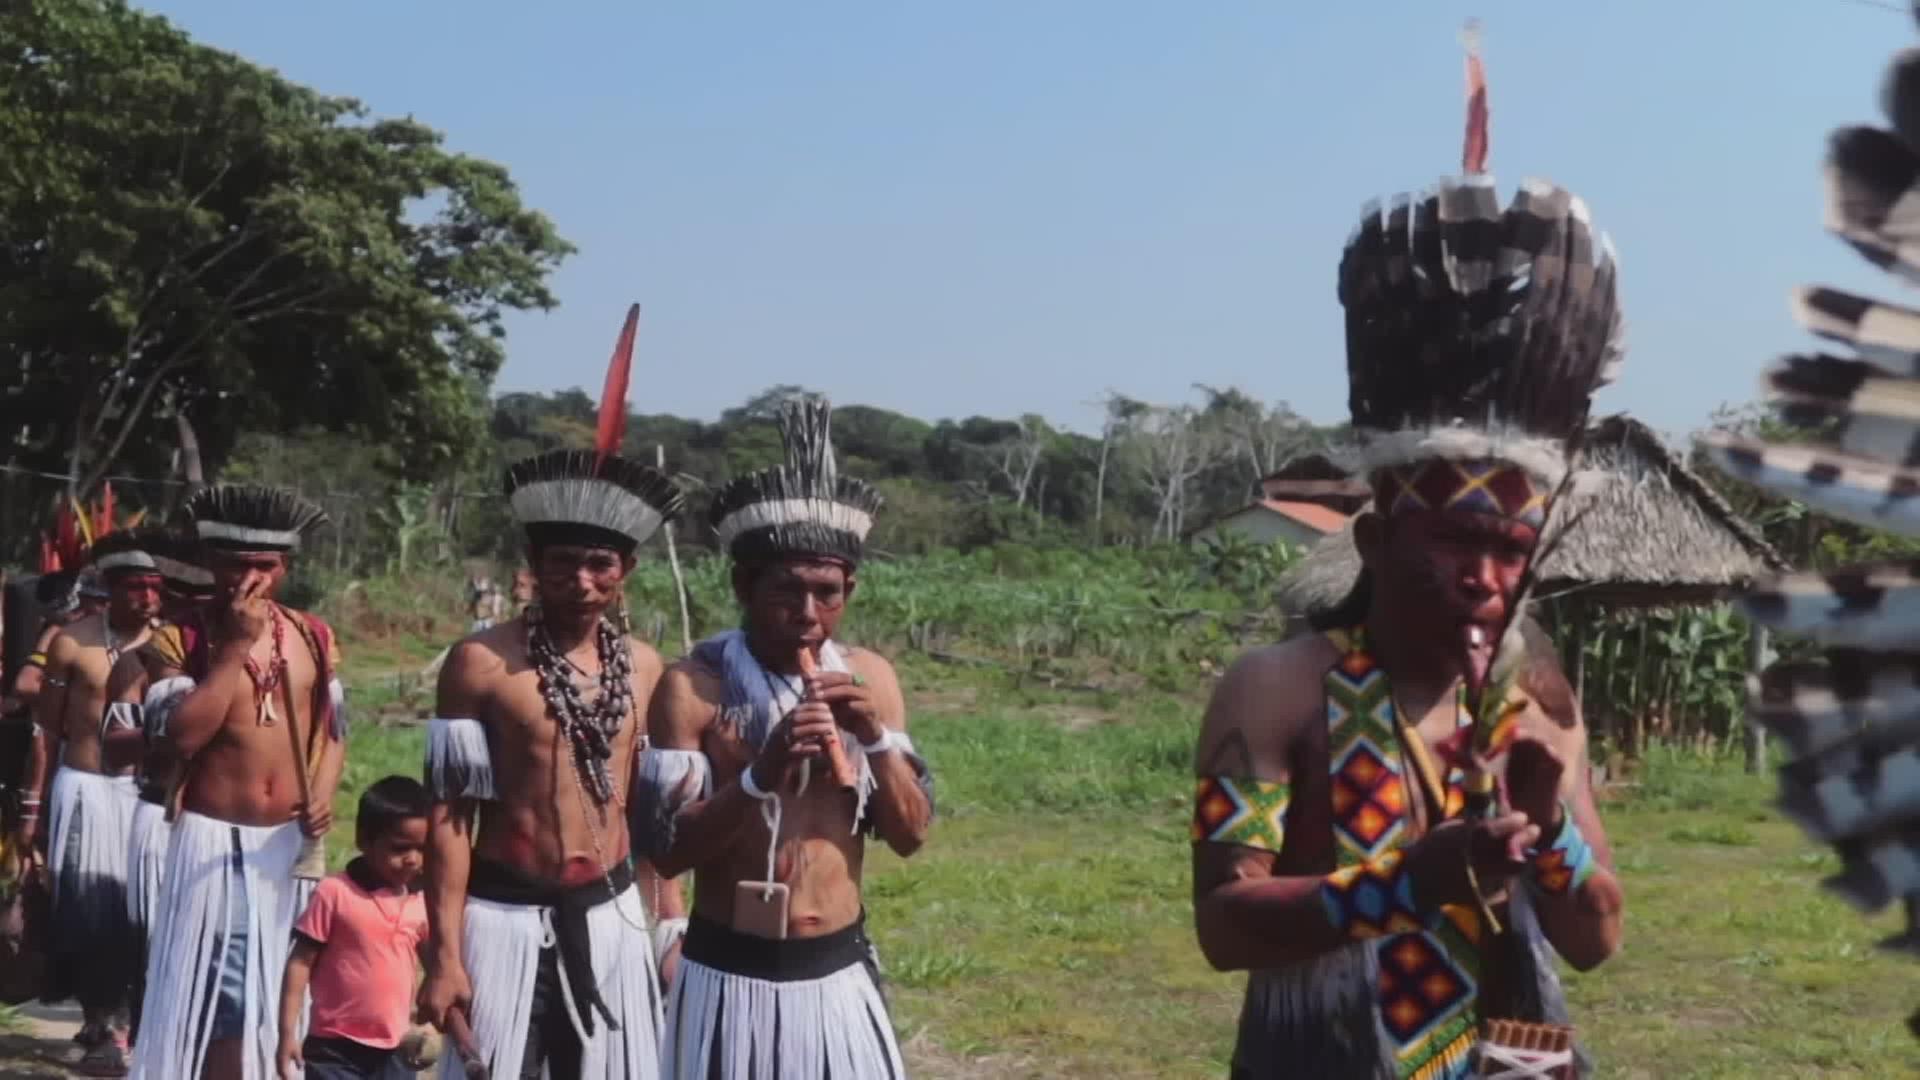 Indigenes Volk aus Brasilien